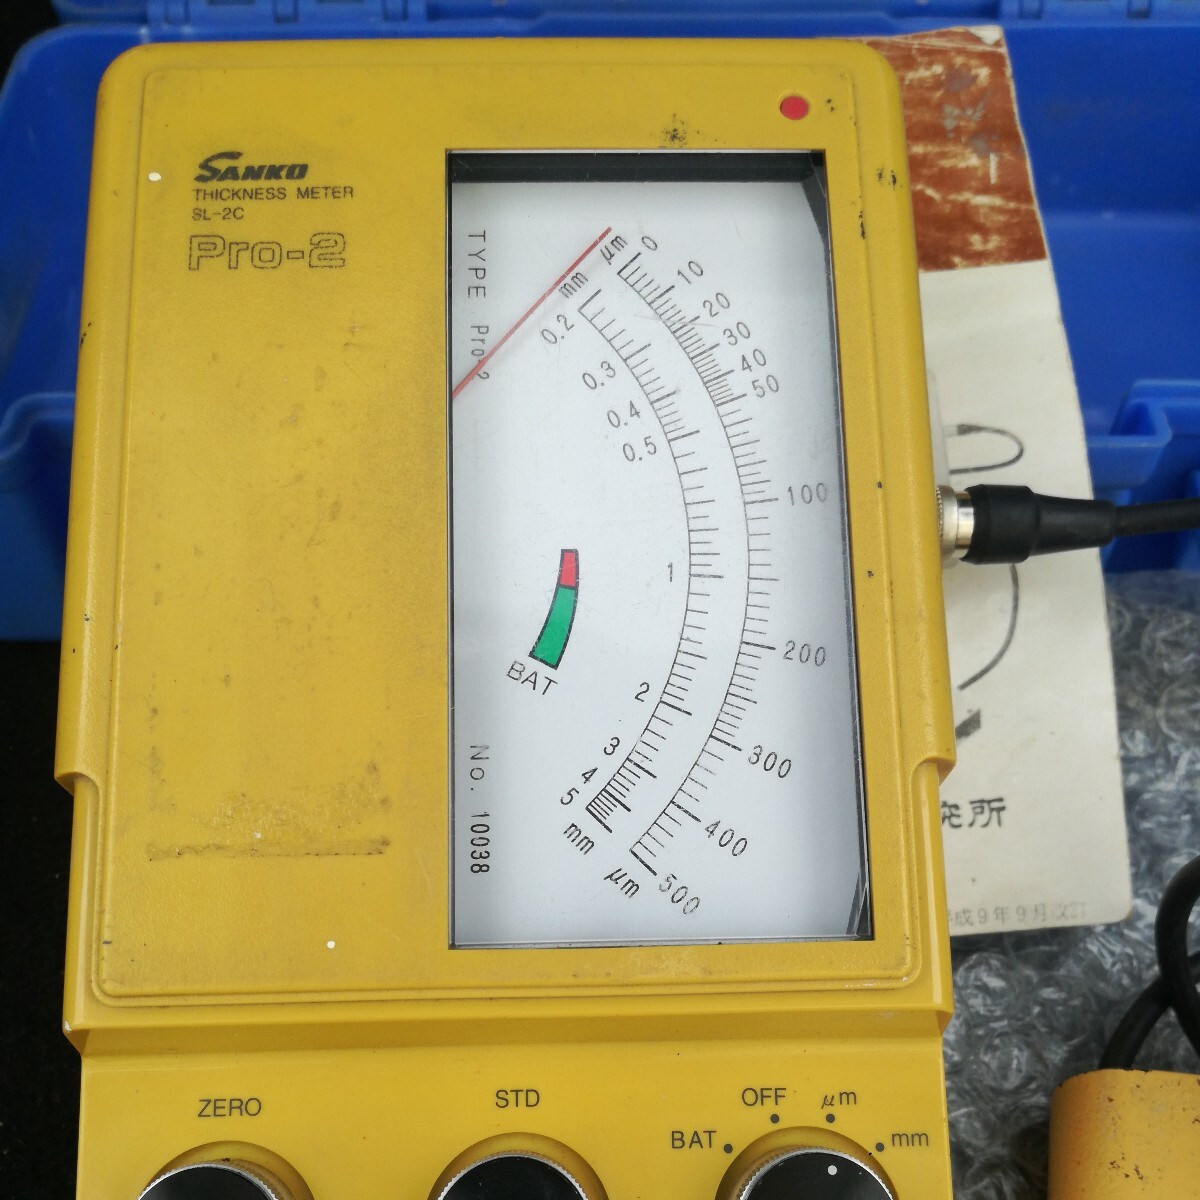  измерение контейнер электромагнитный тип . толщина итого солнечный kou электронный sanko pro-2 тестер . толщина итого Junk аналог тестер измеритель измерение 